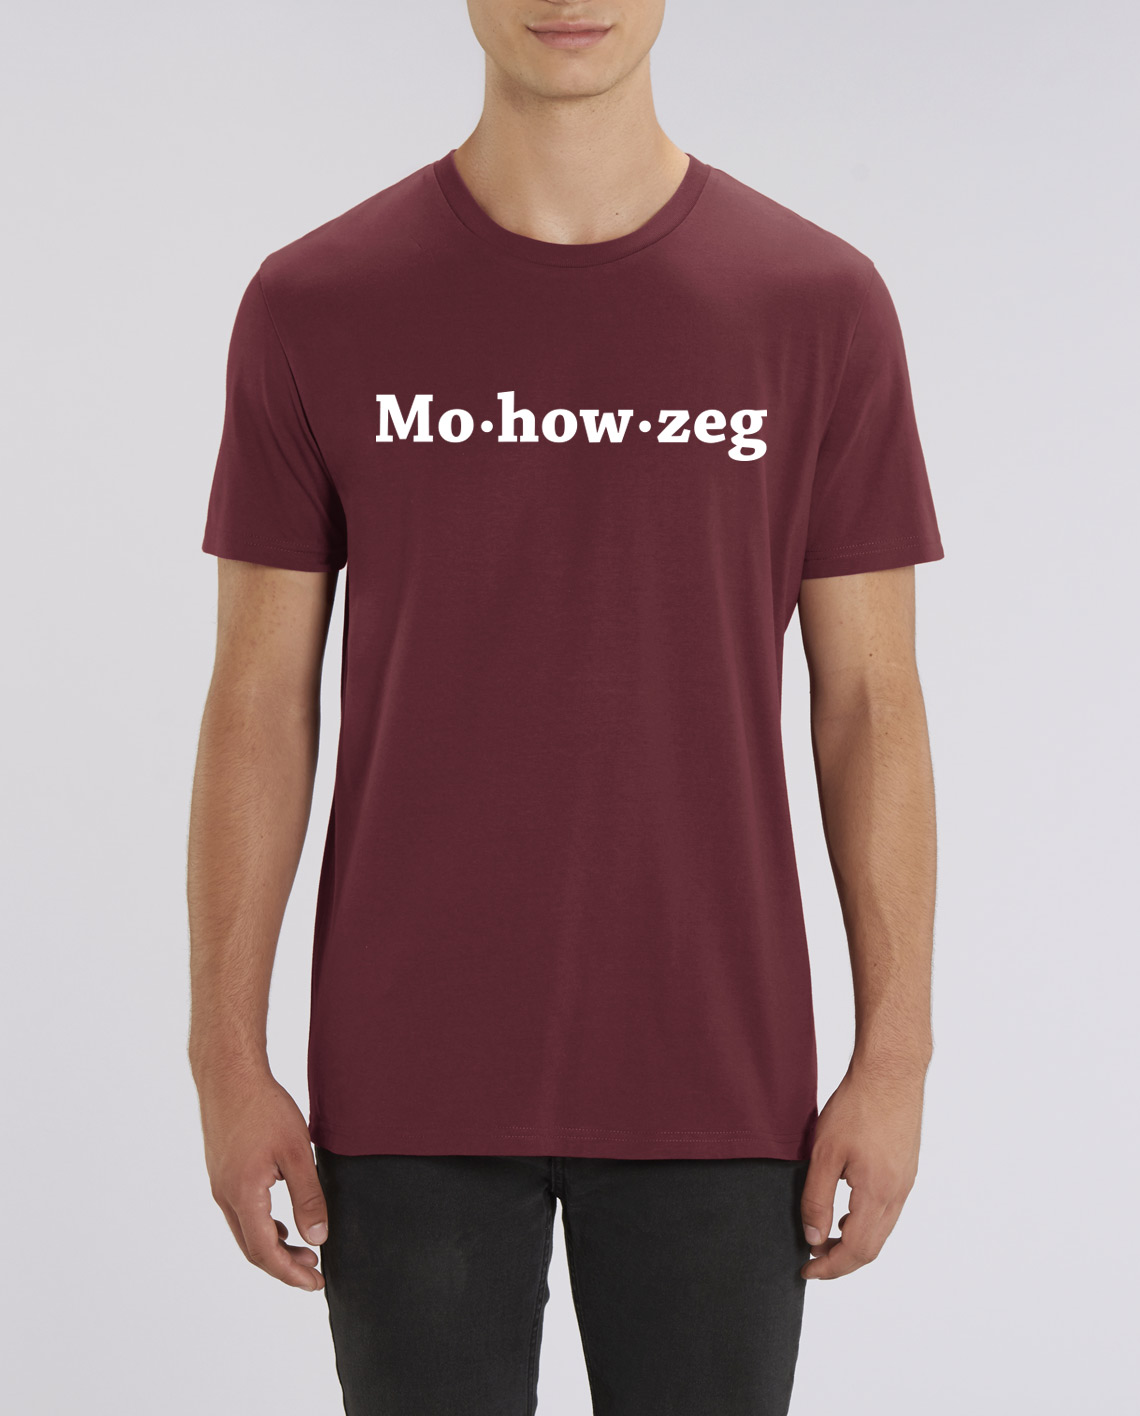 T-Shirt how zeg (M) kopen bij Intdialect - Intdialect >>